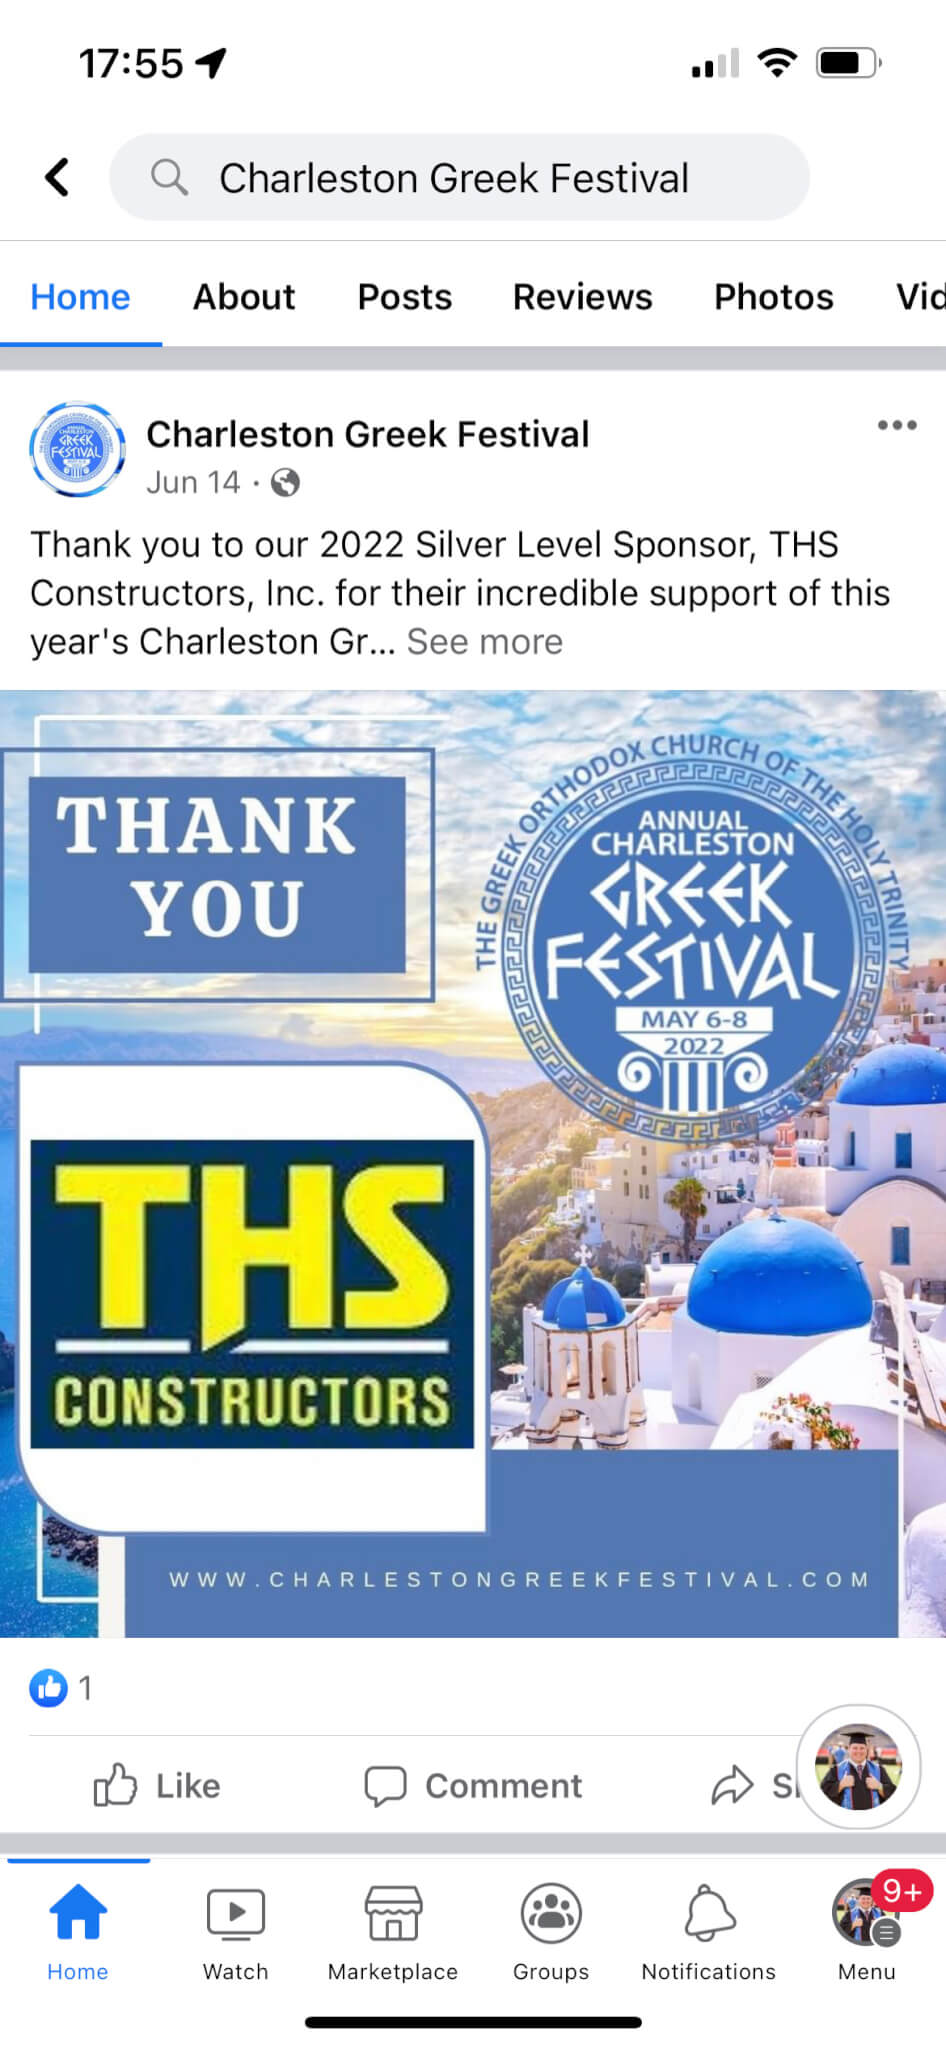 Charleston Greek Festival social media management client 